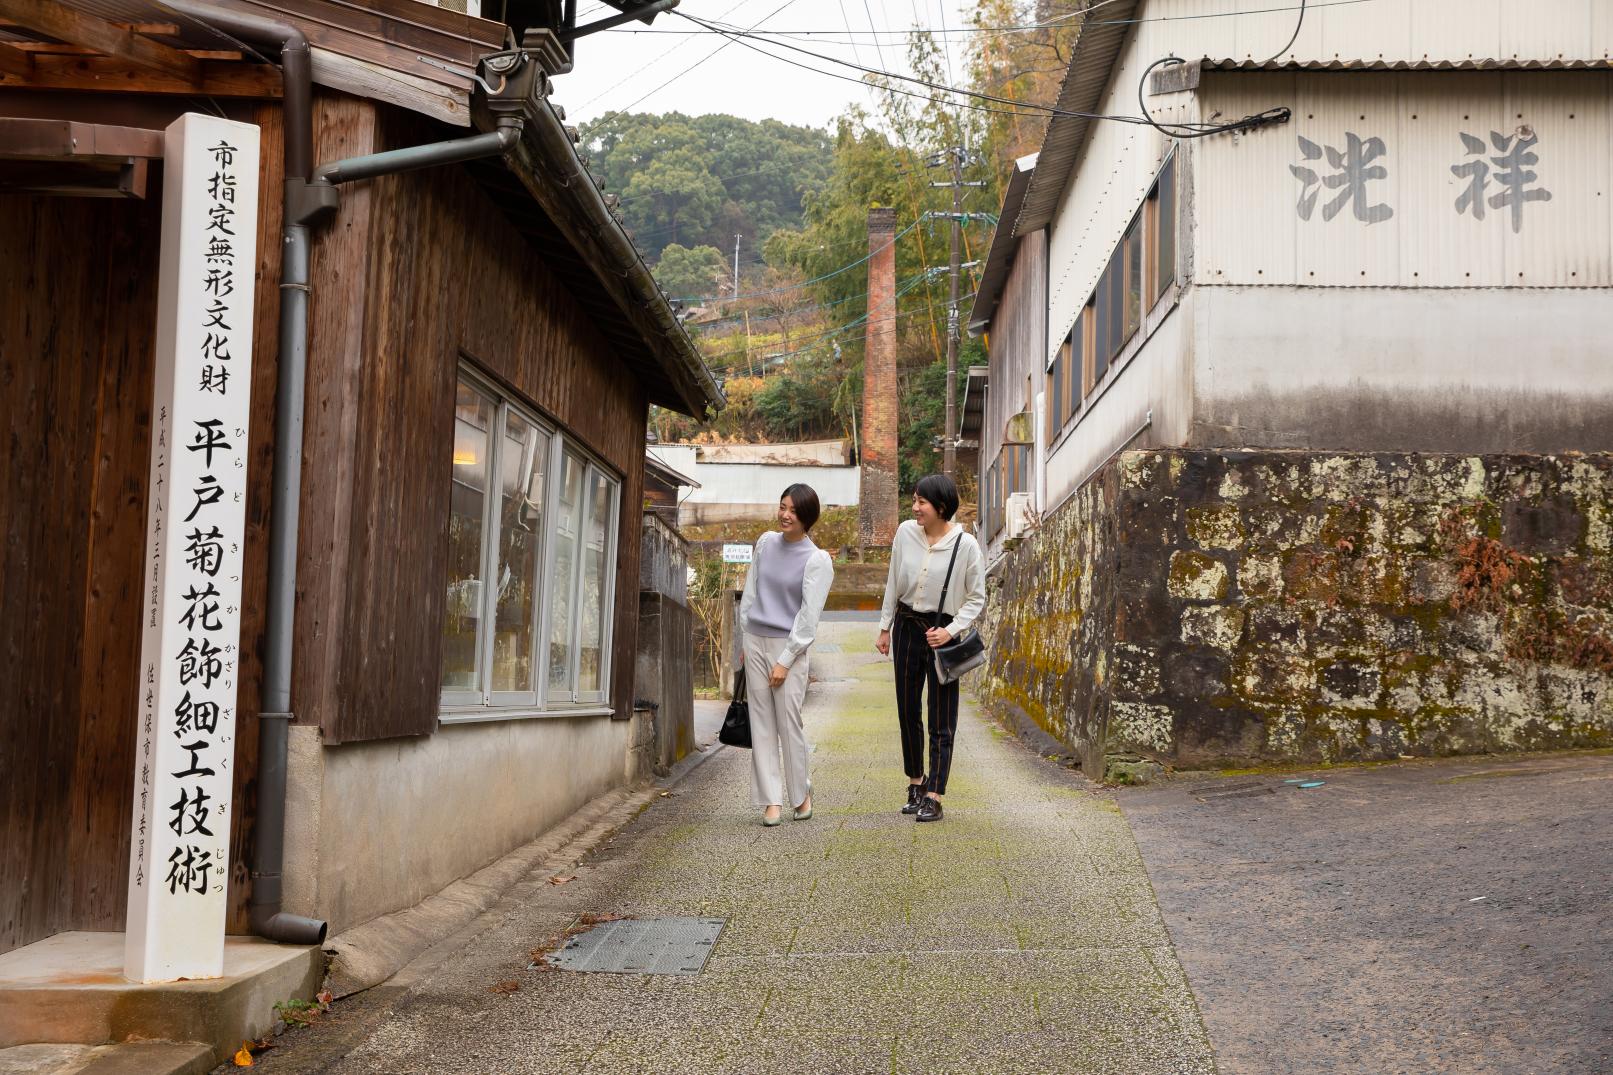 【택시 플랜】400년 역사를 자랑하는 사세보의 도자기 마을 '미카와치'를 둘러보는 코스-1